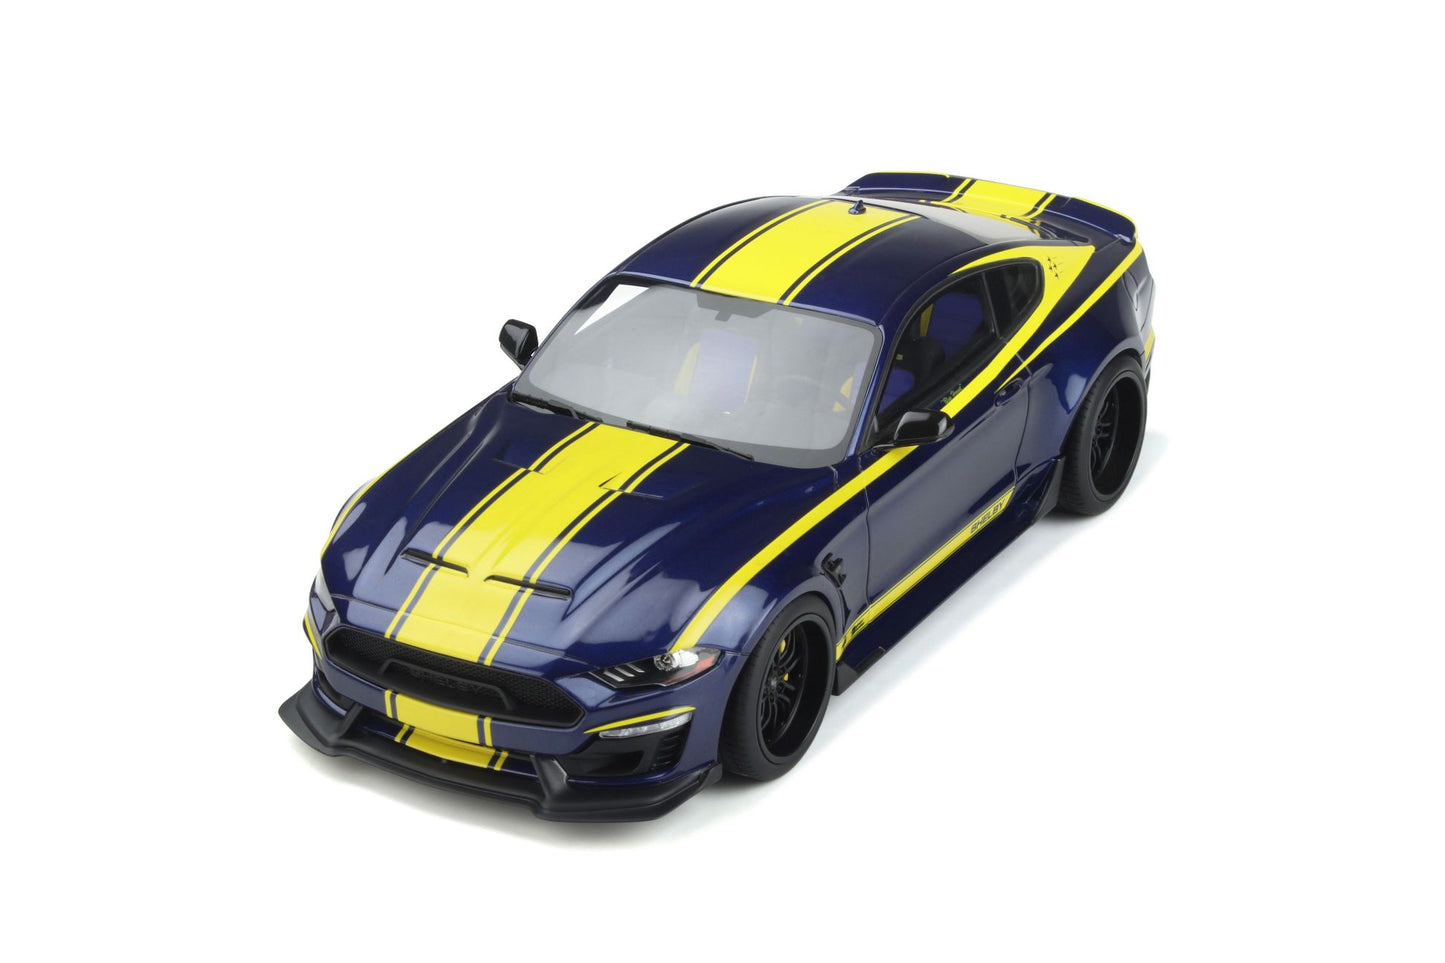 GT Spirit - Shelby Super Snake "Blue Hornet" (Kona Blue) 1:18 Scale Model Car **[Pre-Order]**